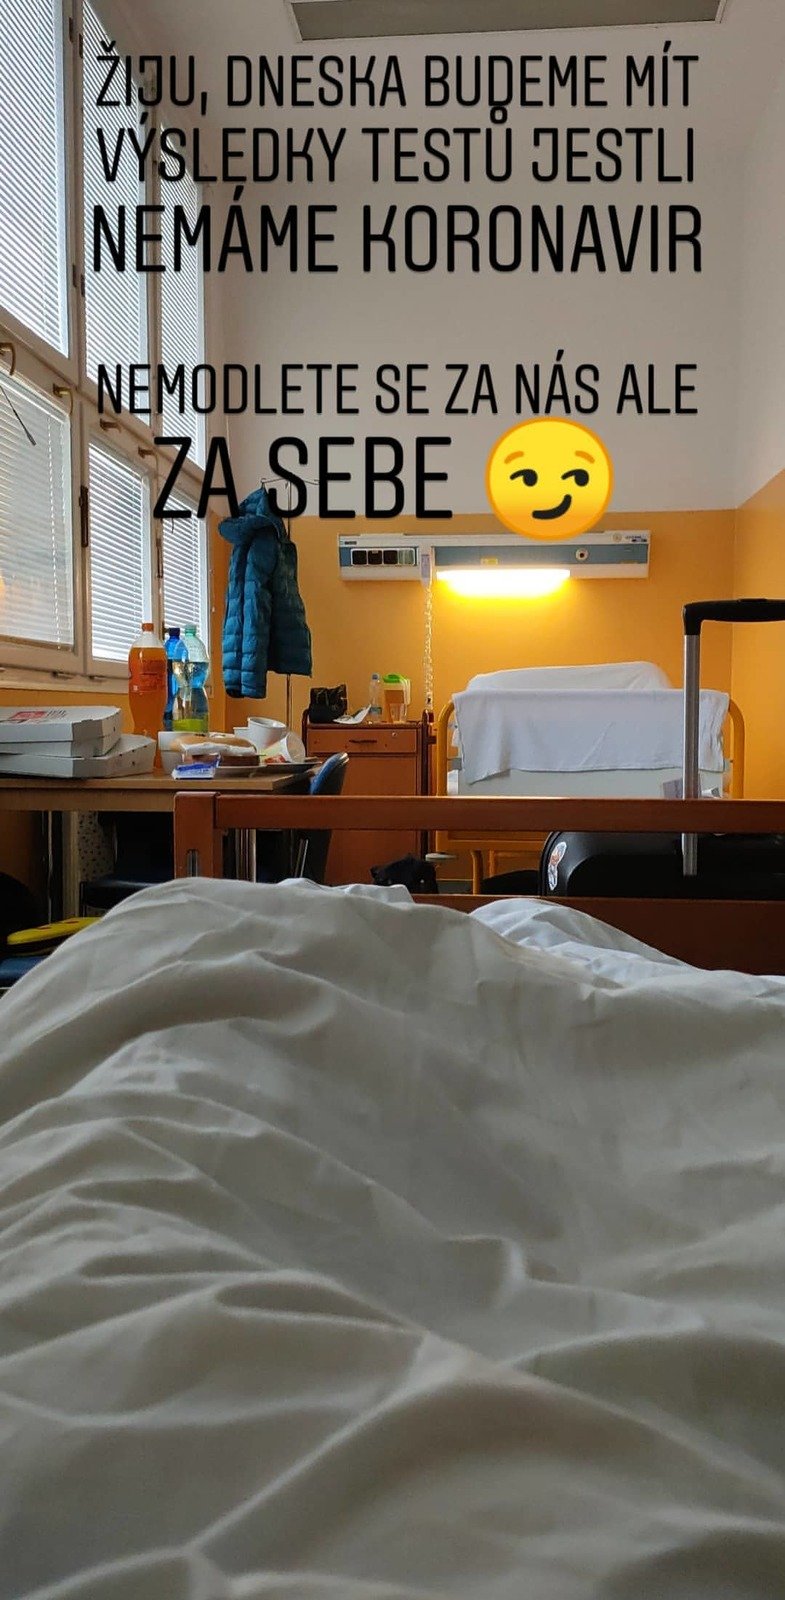 Čech Dan po evakuaci z Wu-chanu dal na instagram foto z Bulovky, kde čeká na výsledky vyšetření na koronavirus (3. 2. 2020).